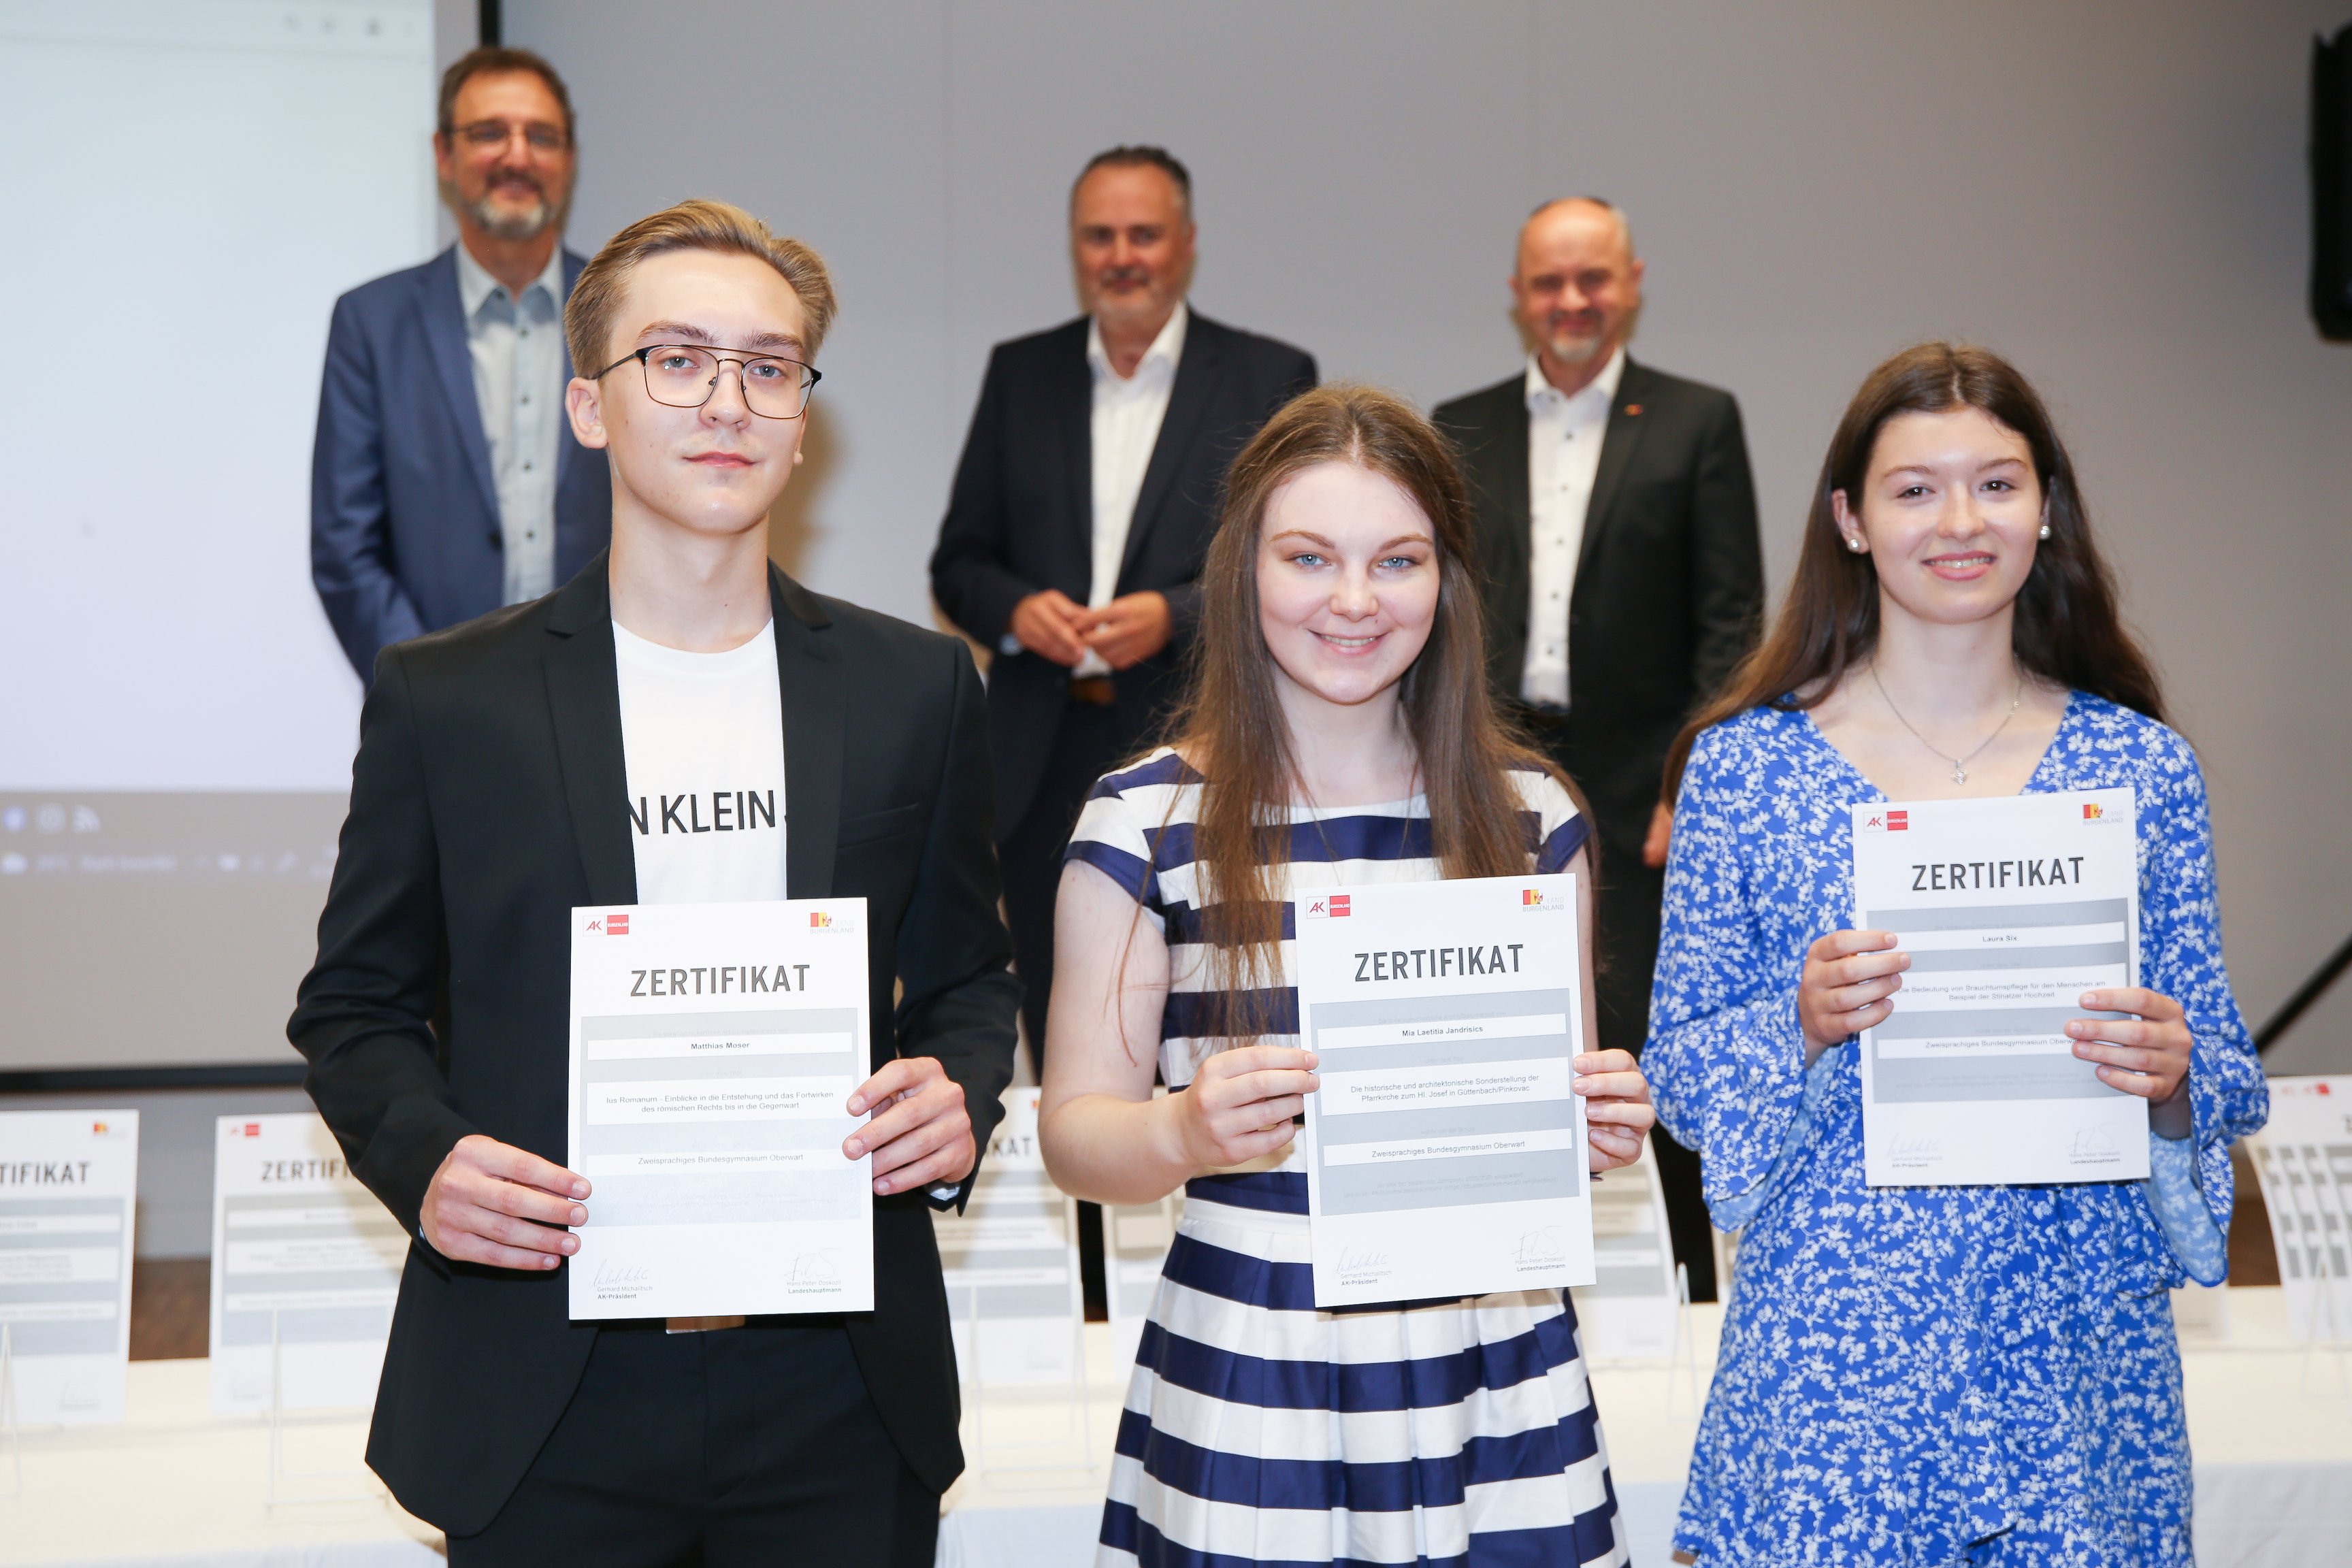 SchülerInnen der Schule "ZBG Oberwart" erhalten Zertifikat für ihre schriftliche Arbeit "Die Bedeutung von Brauchtumspflege für den Menschen am Beispiel der Stinatzer Hochzeit".